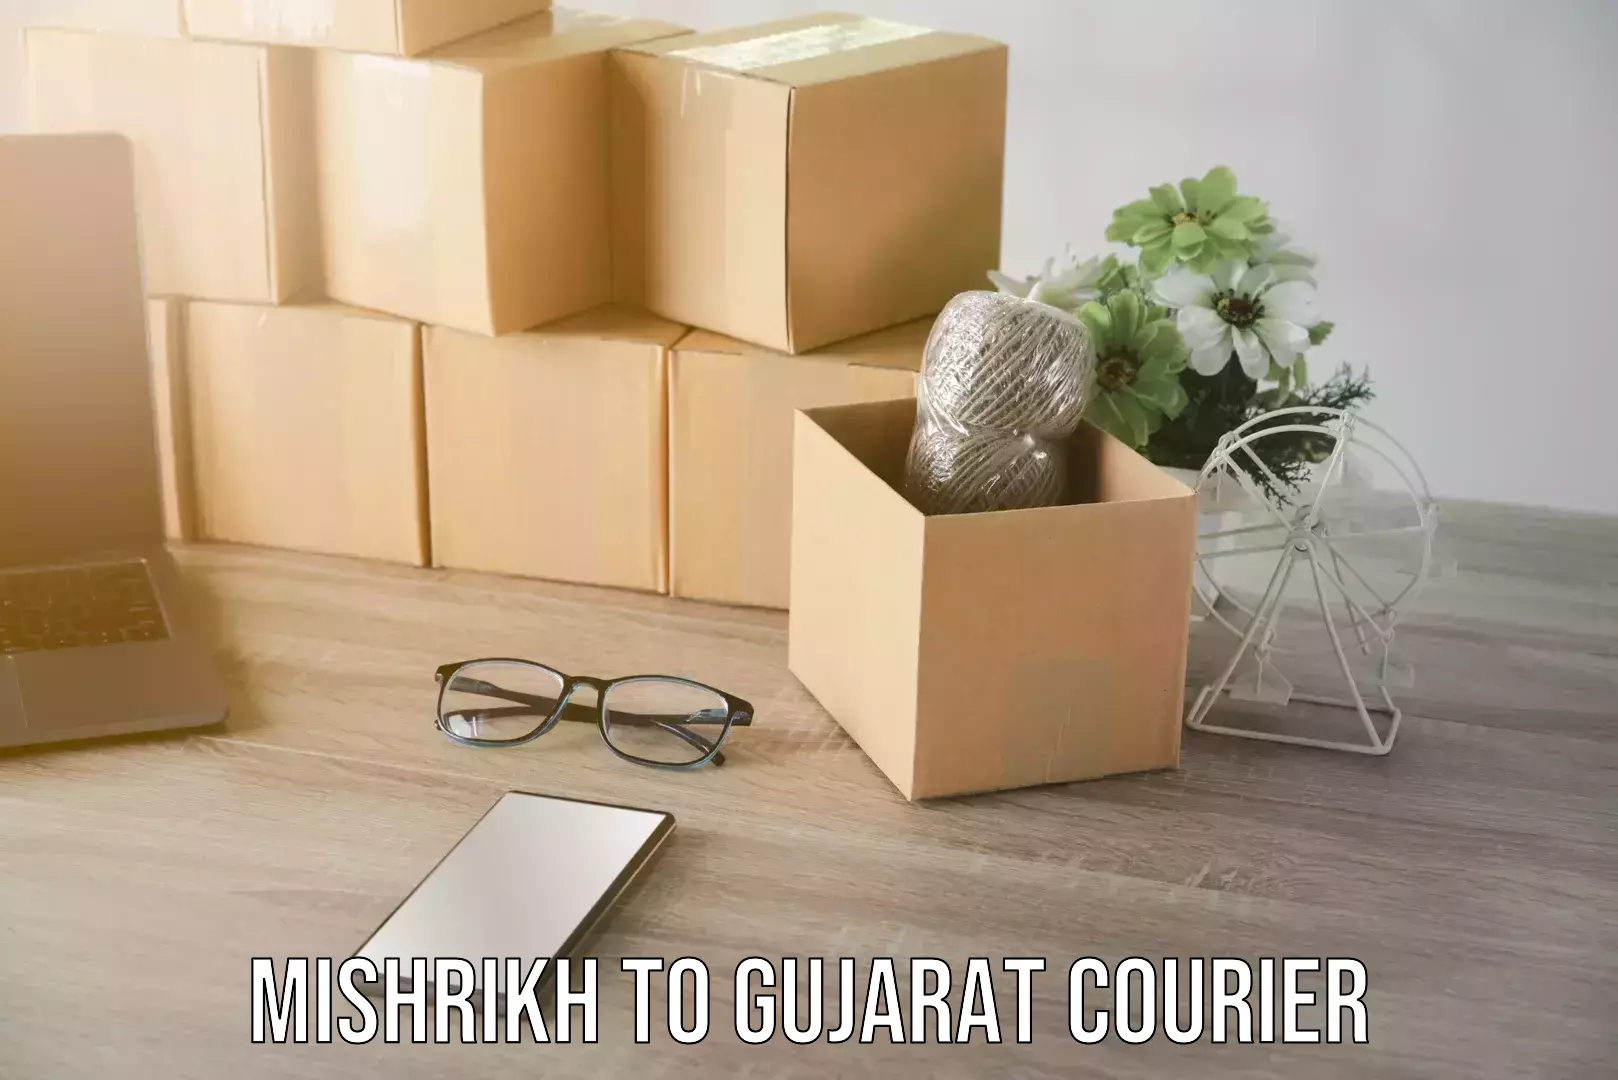 Furniture transport specialists Mishrikh to Gujarat